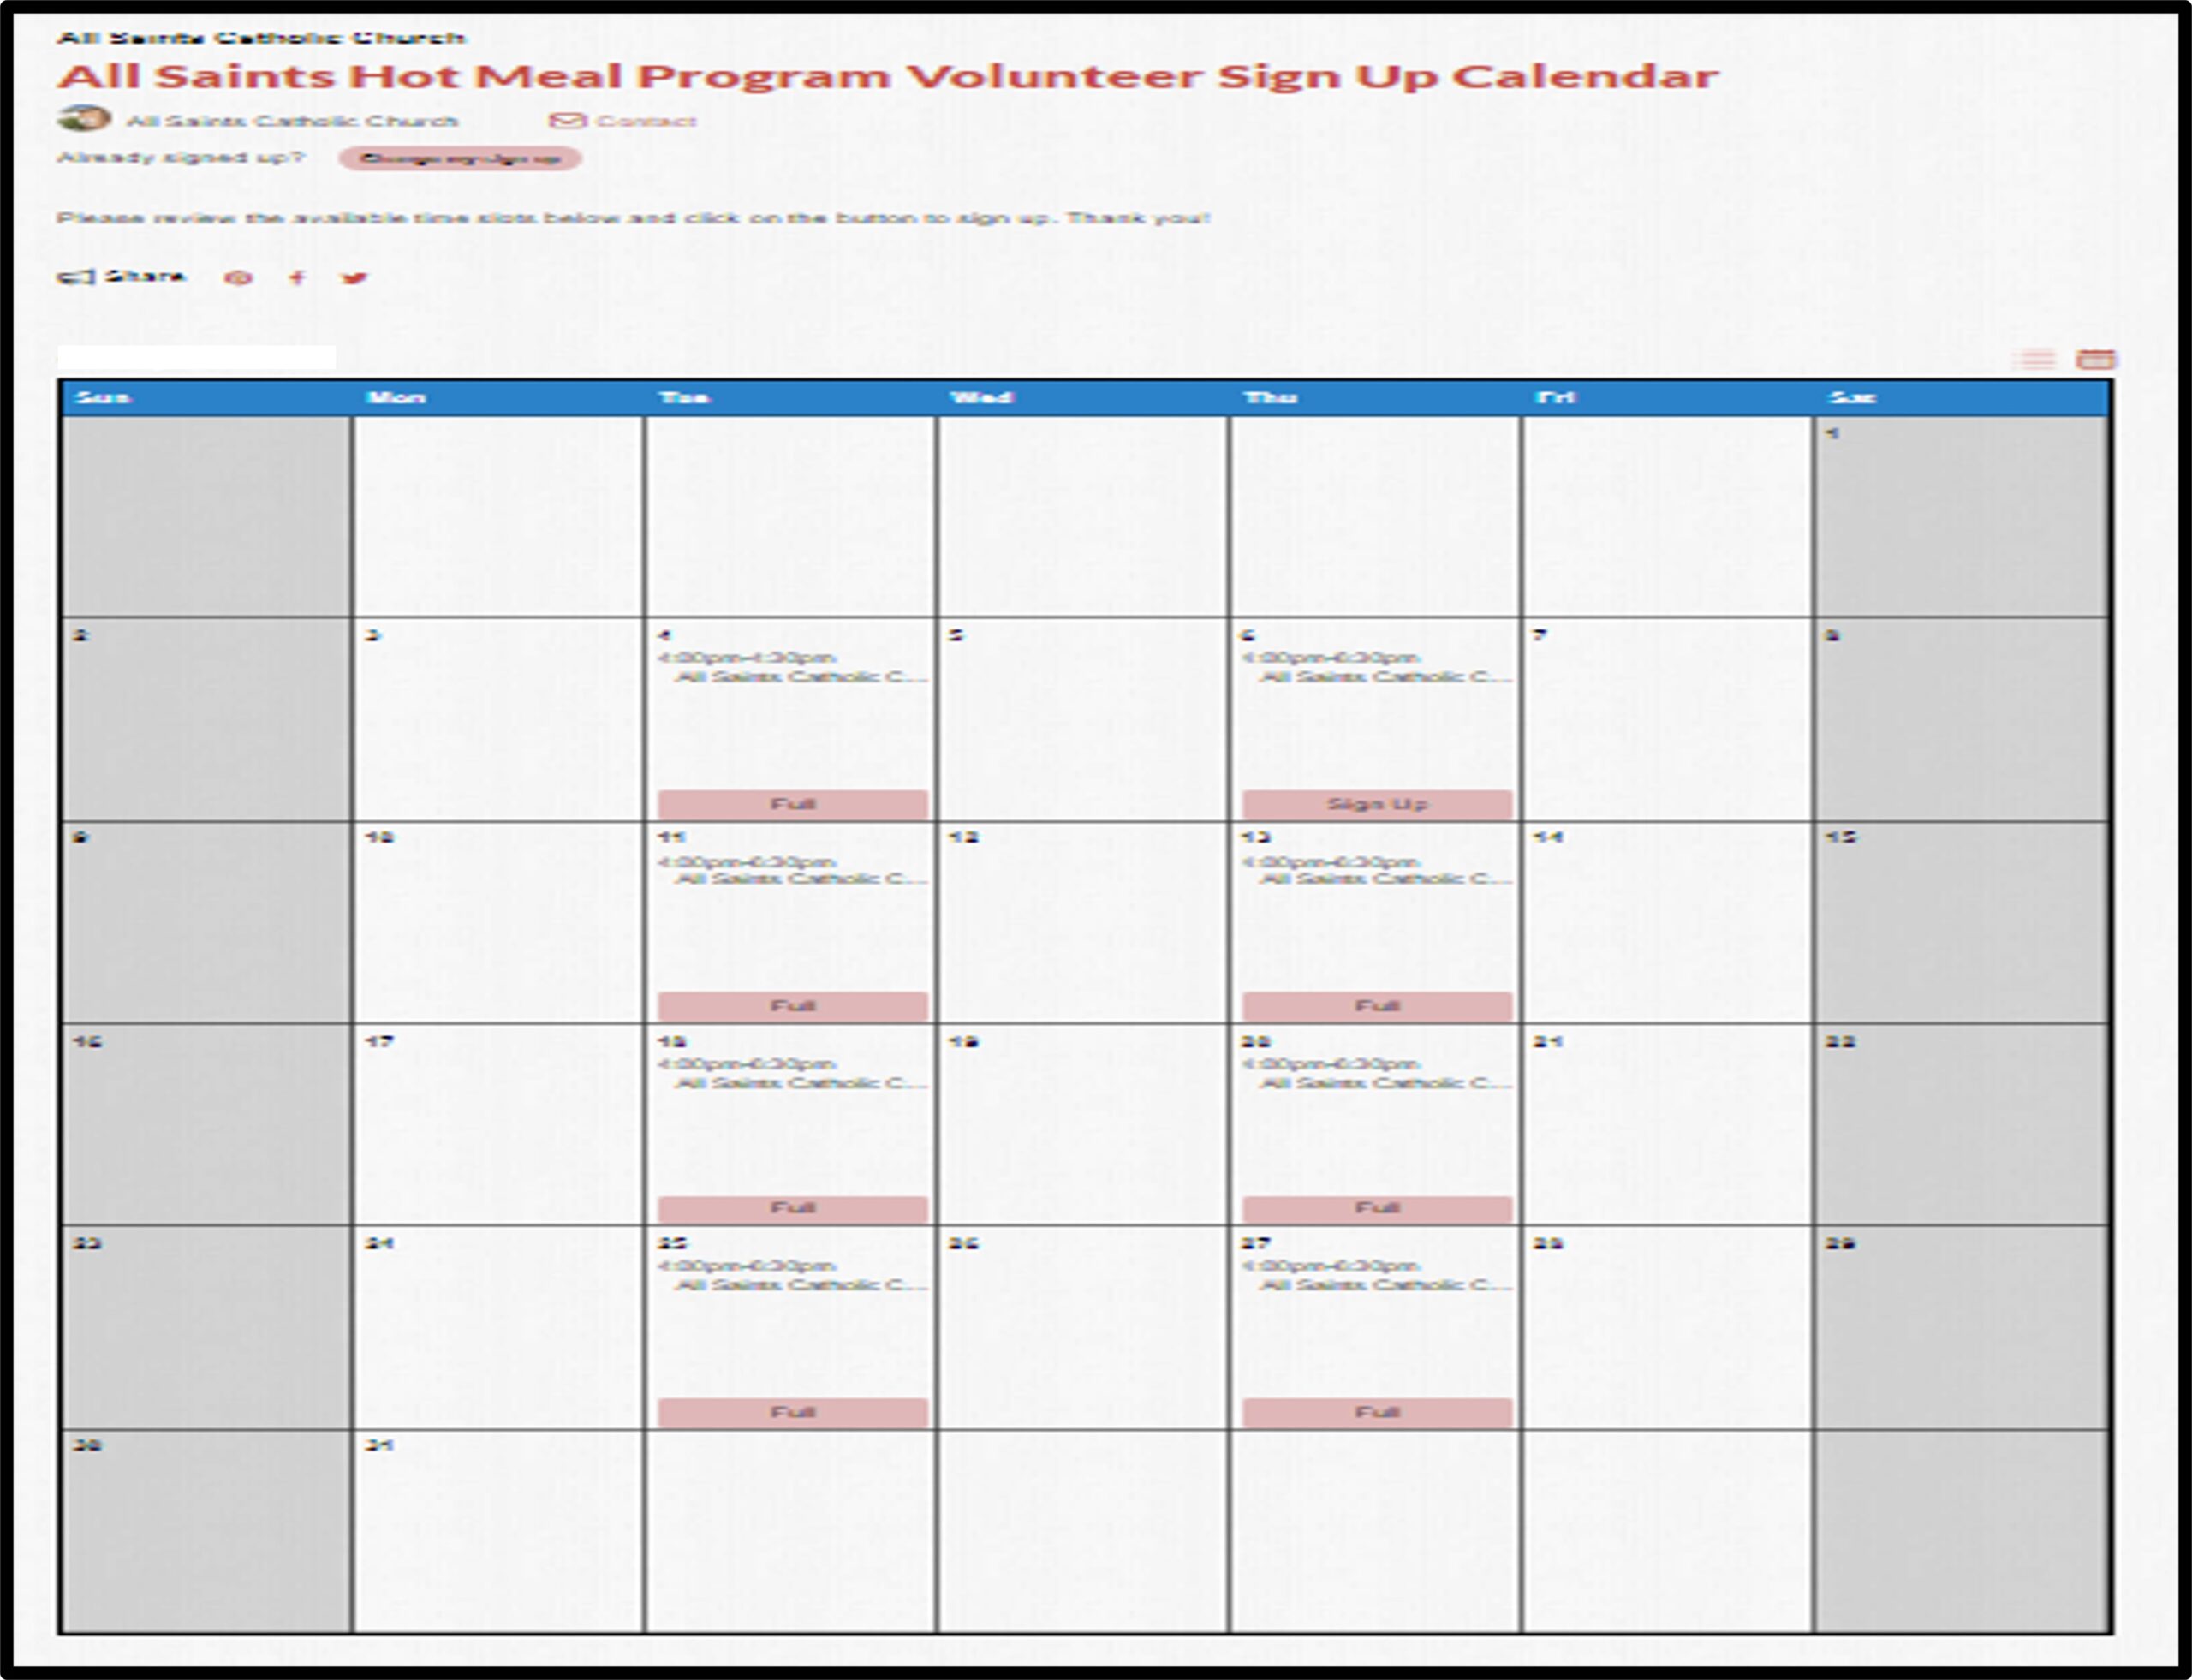 All Saints Hot Meal Program Volunteer Sign Up Calendar (Click on Image)